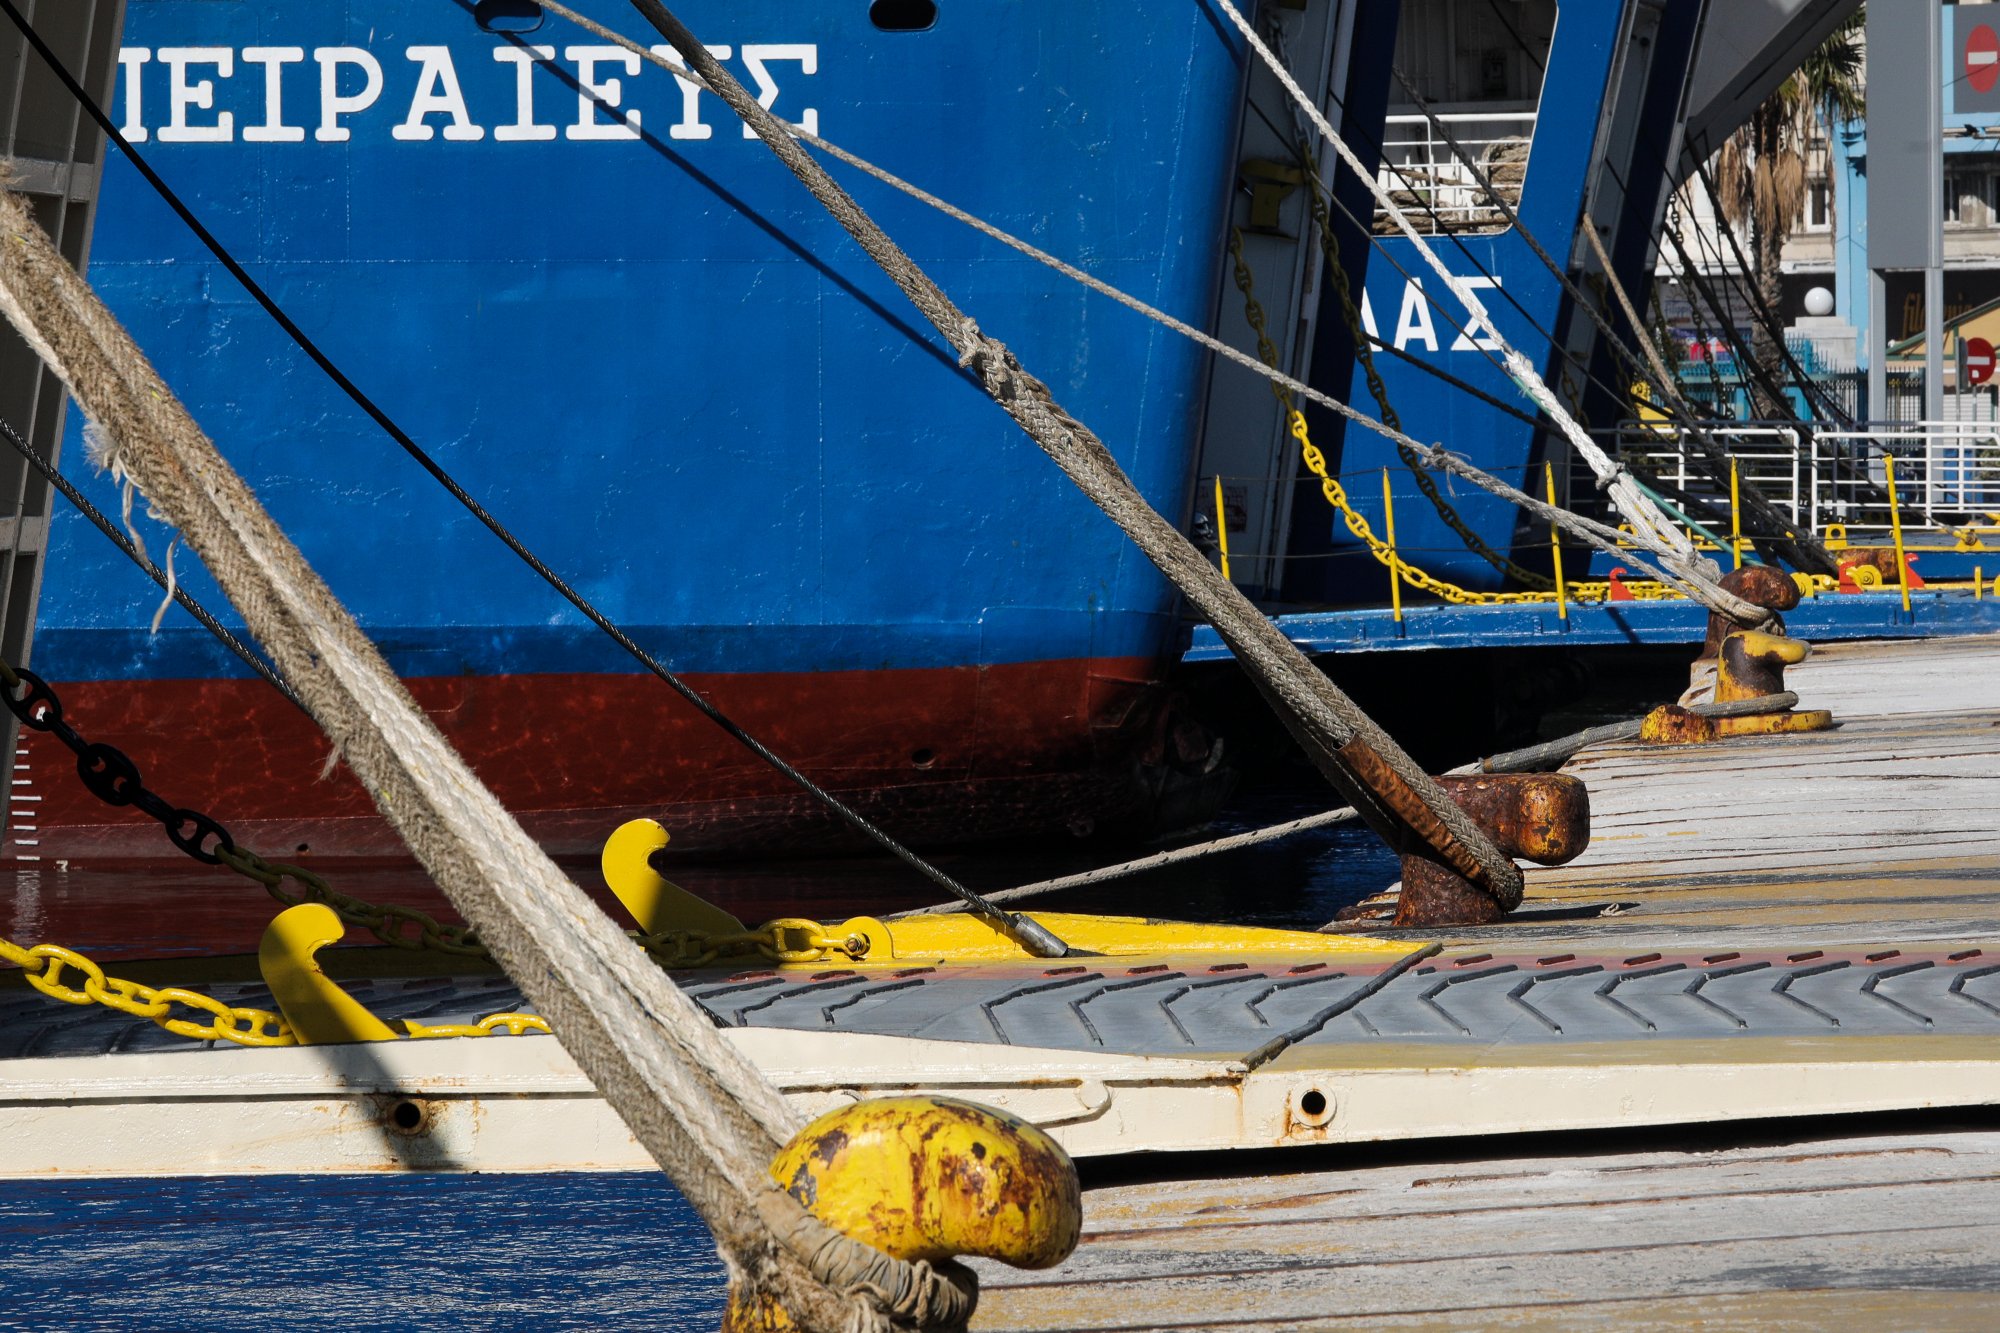 Απεργία ΠΝΟ: Δεμένα τα πλοία στα λιμάνια μέχρι τα μεσάνυχτα